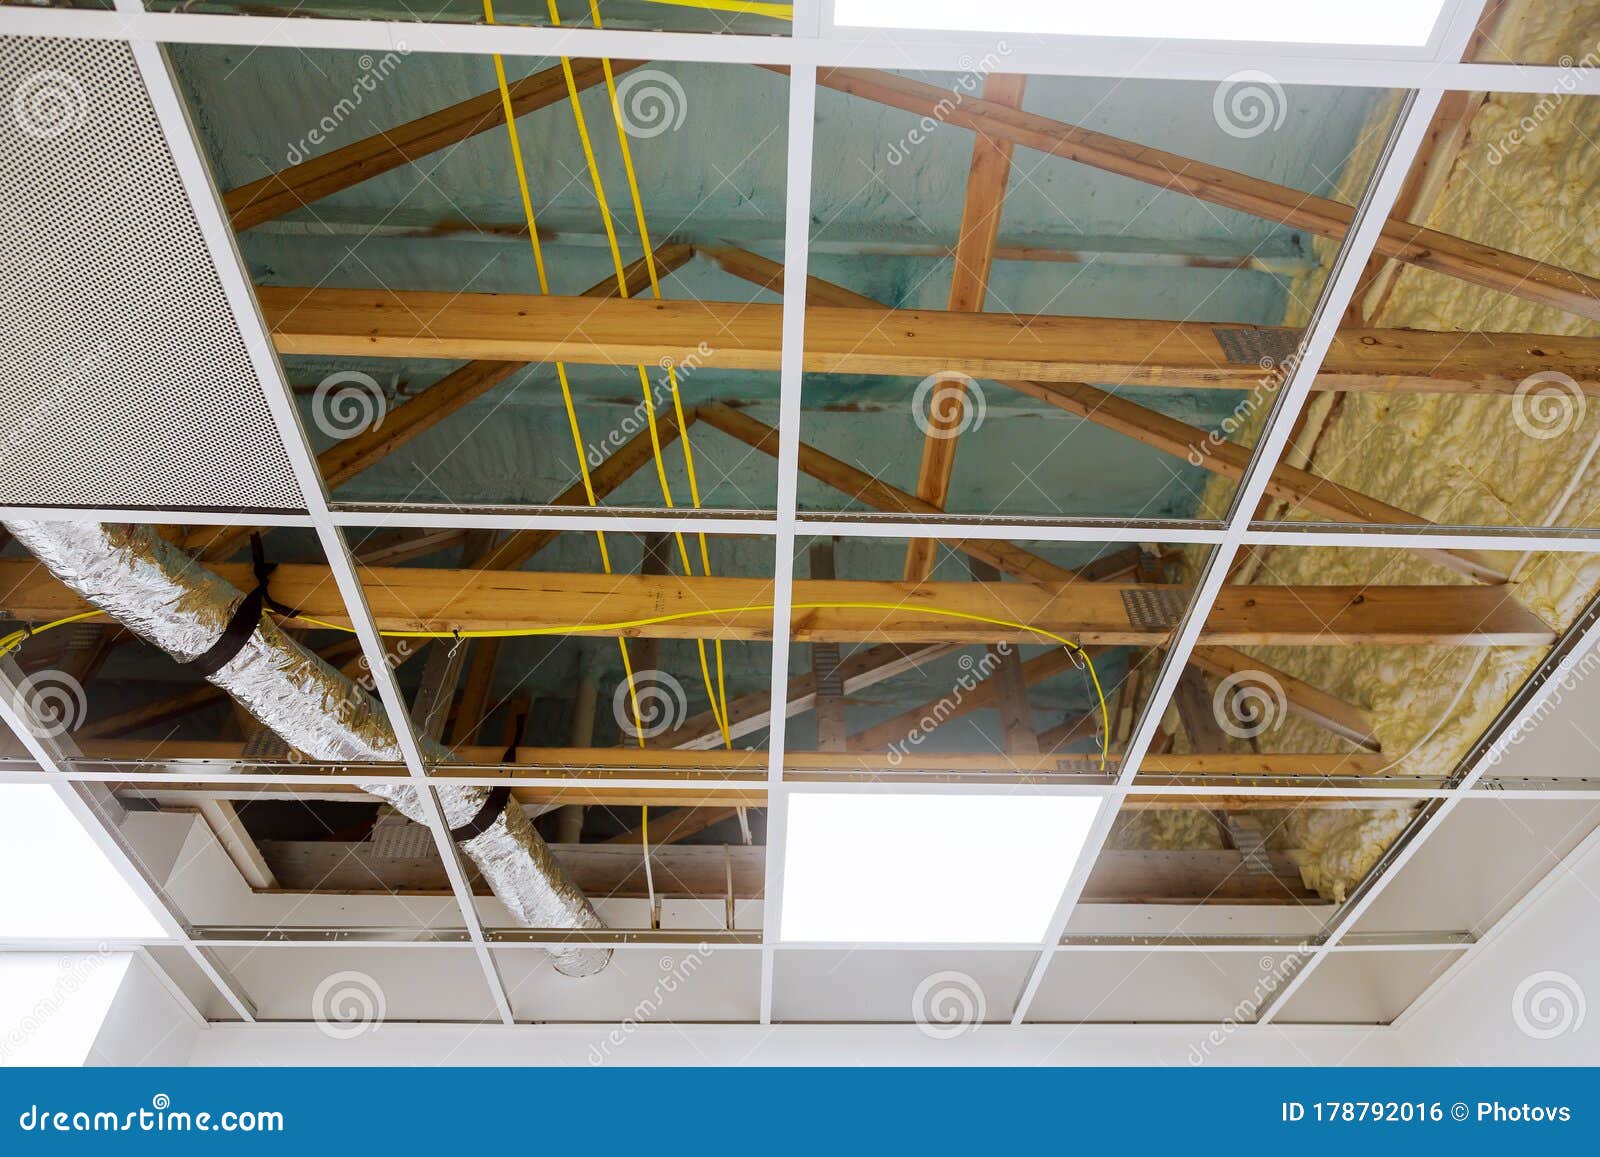  Metal  Frame  Of Suspended  Ceilings  Making Of False  Ceilings  